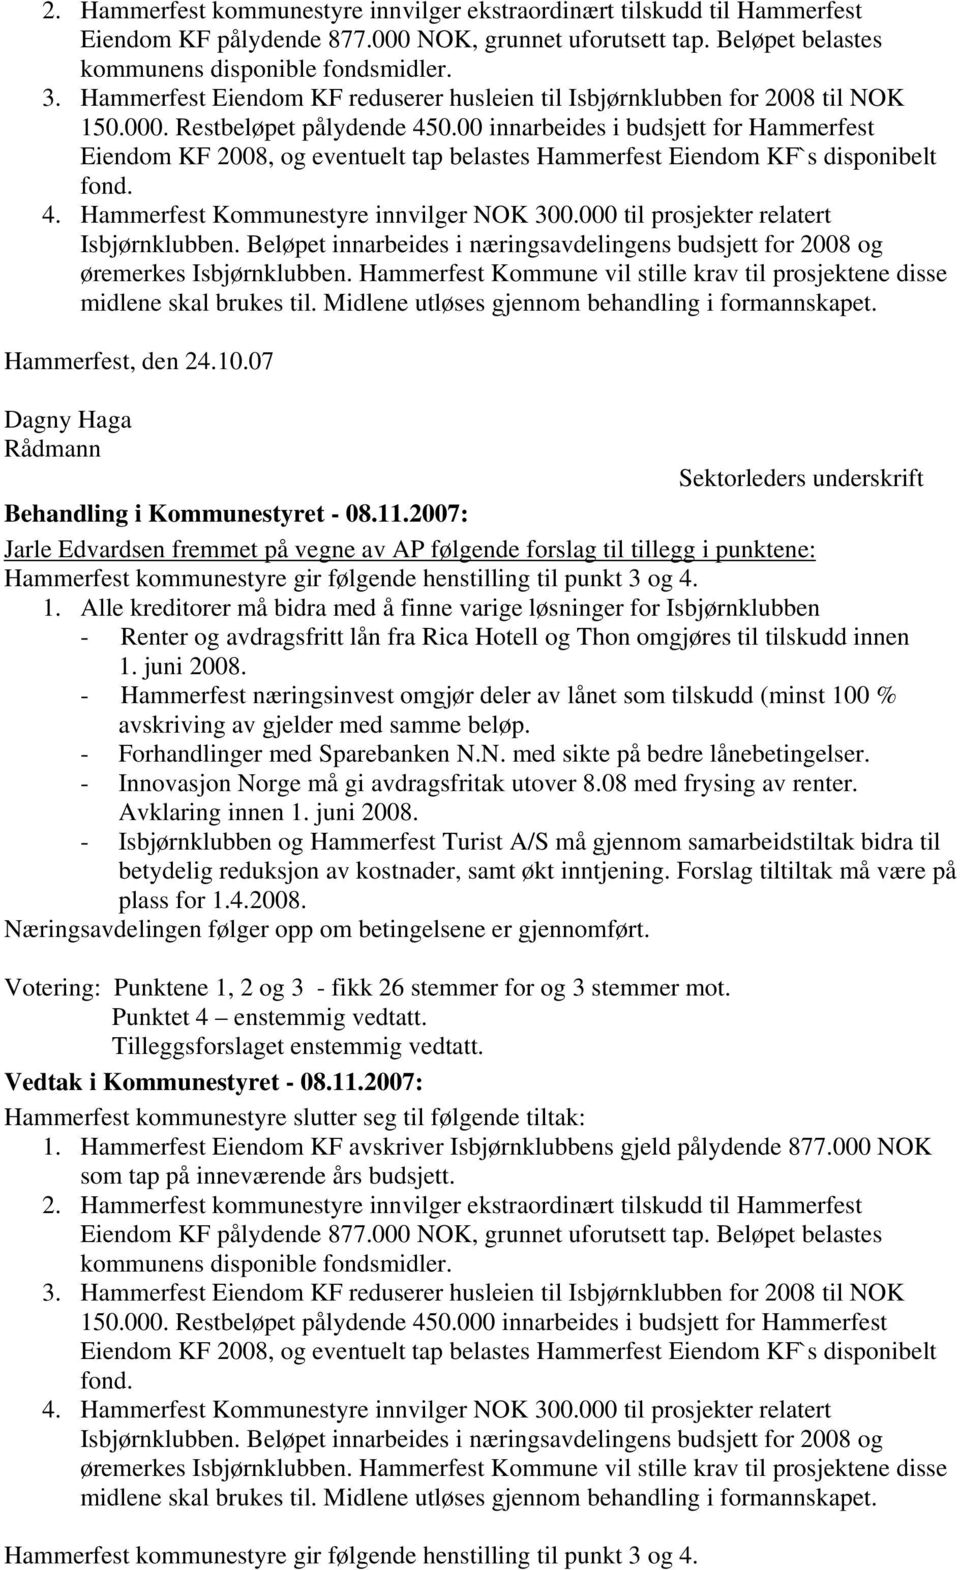 00 innarbeides i budsjett for Hammerfest Eiendom KF 2008, og eventuelt tap belastes Hammerfest Eiendom KF`s disponibelt fond. 4. Hammerfest Kommunestyre innvilger NOK 300.